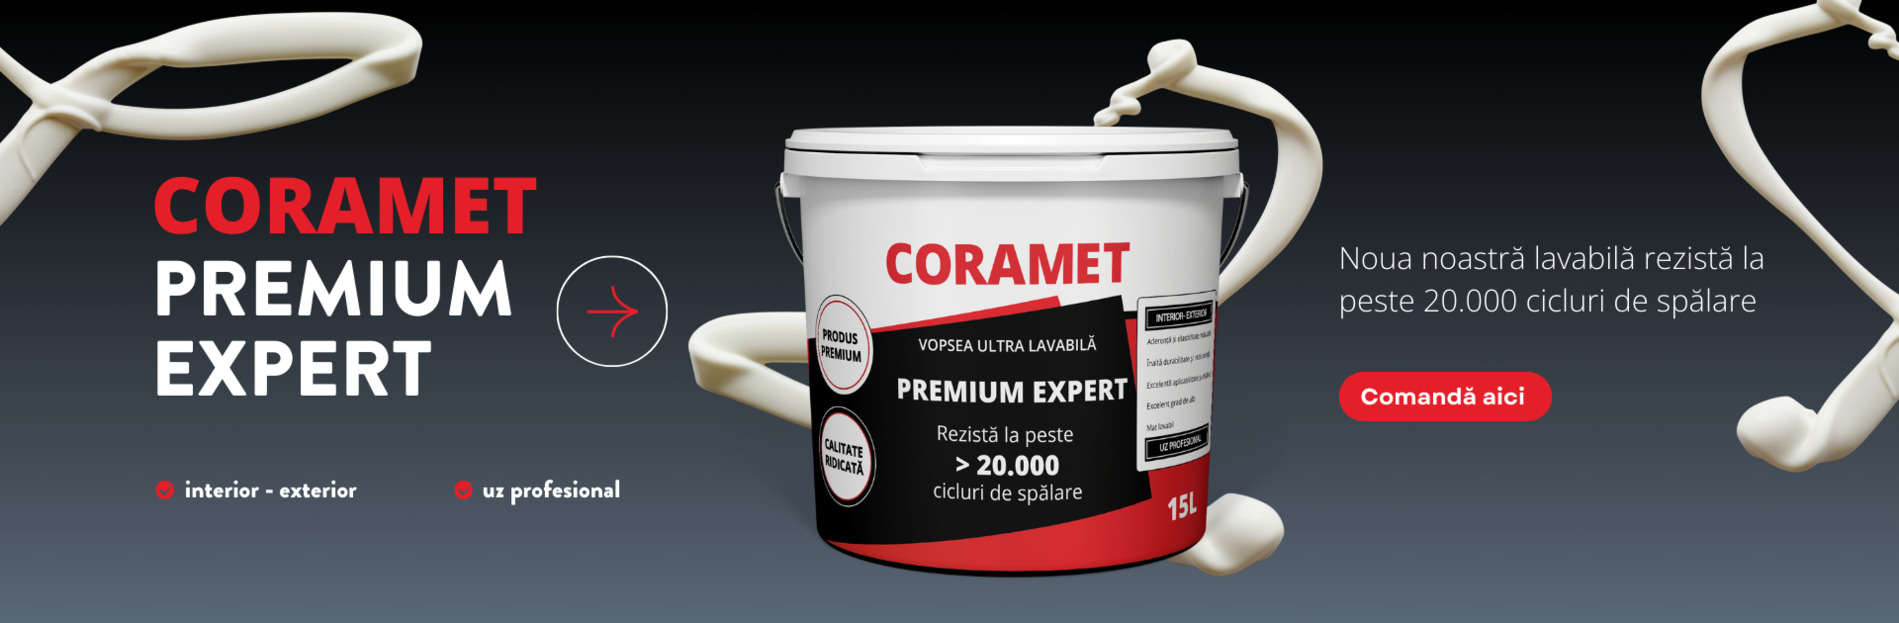 Coramet Premium Expert